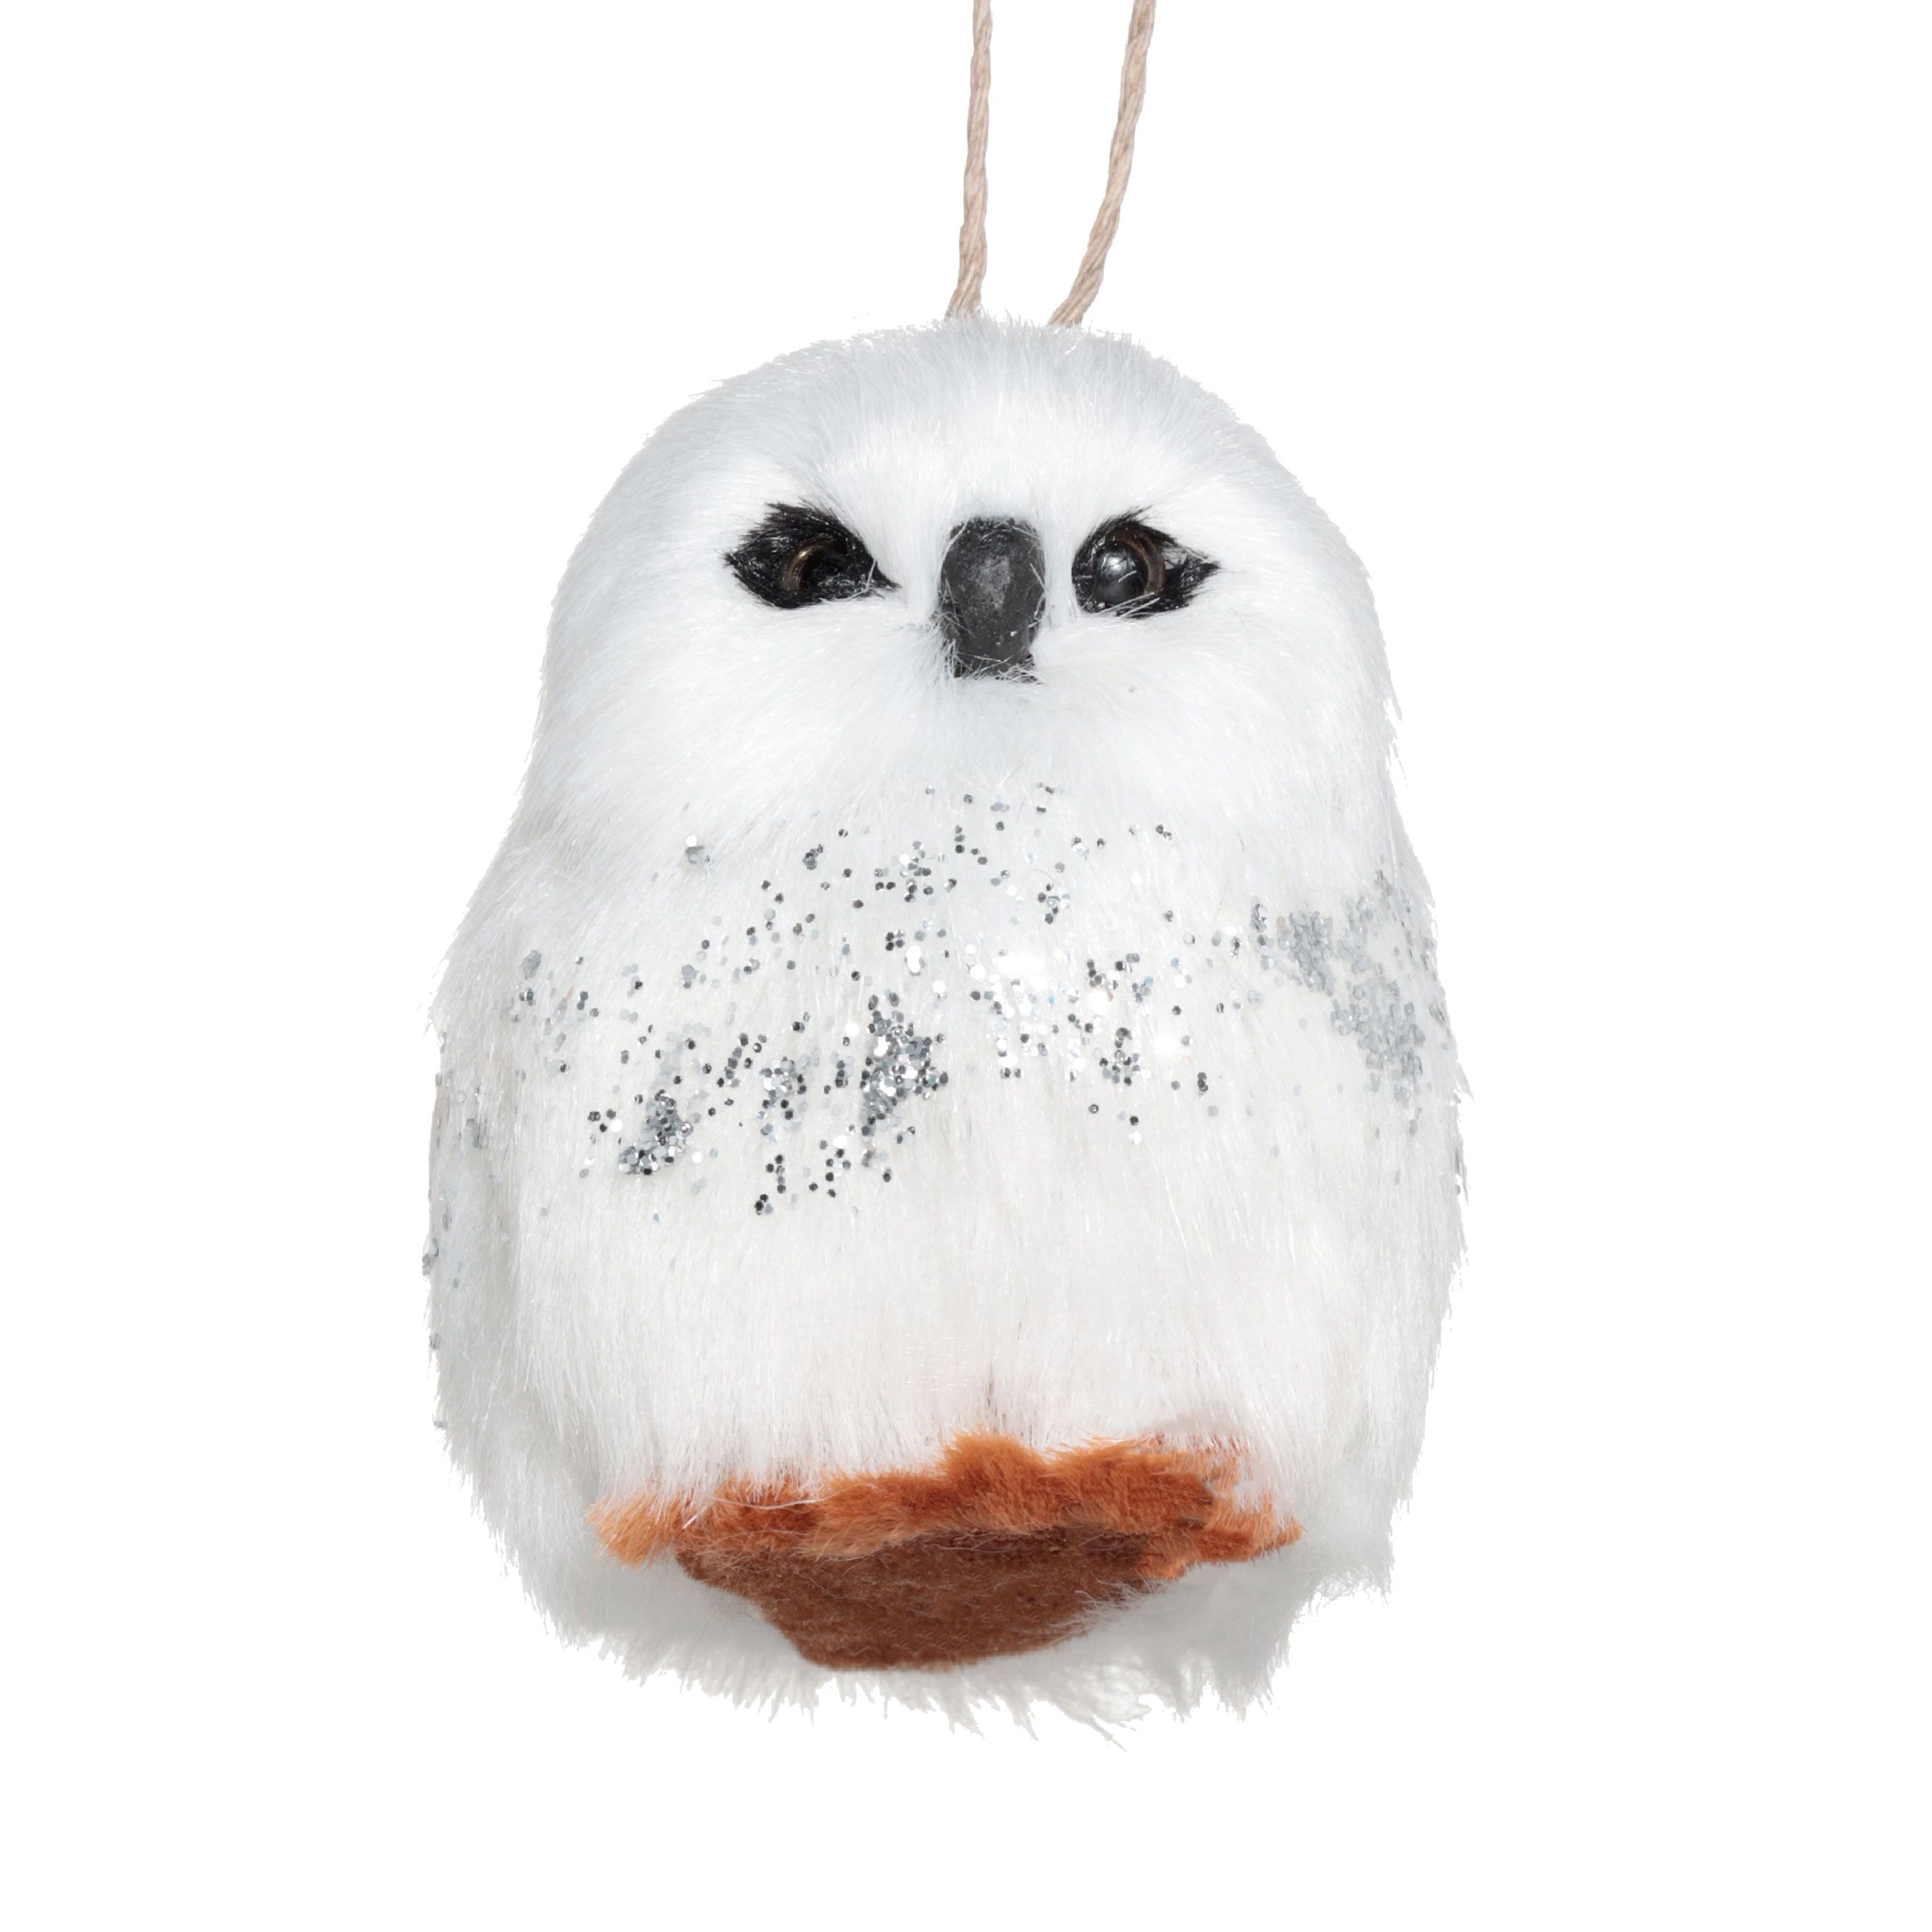 Игрушка елочная, 8 см, полиэстер/пластик, с блестками, Сова, Funny owl